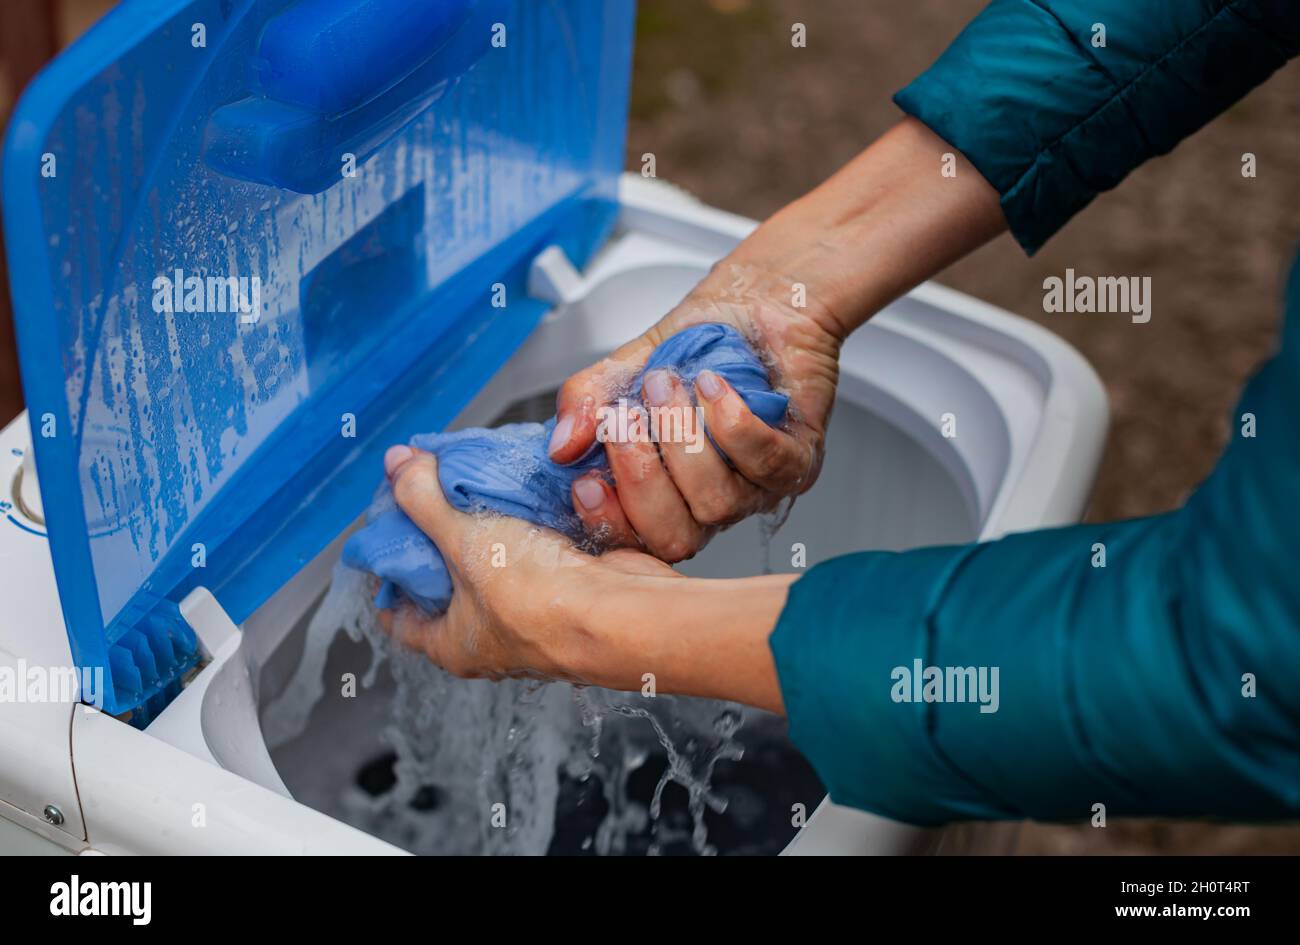 le mani strizzano un oggetto umido dopo il lavaggio in lavatrice. Foto di alta qualità Foto Stock